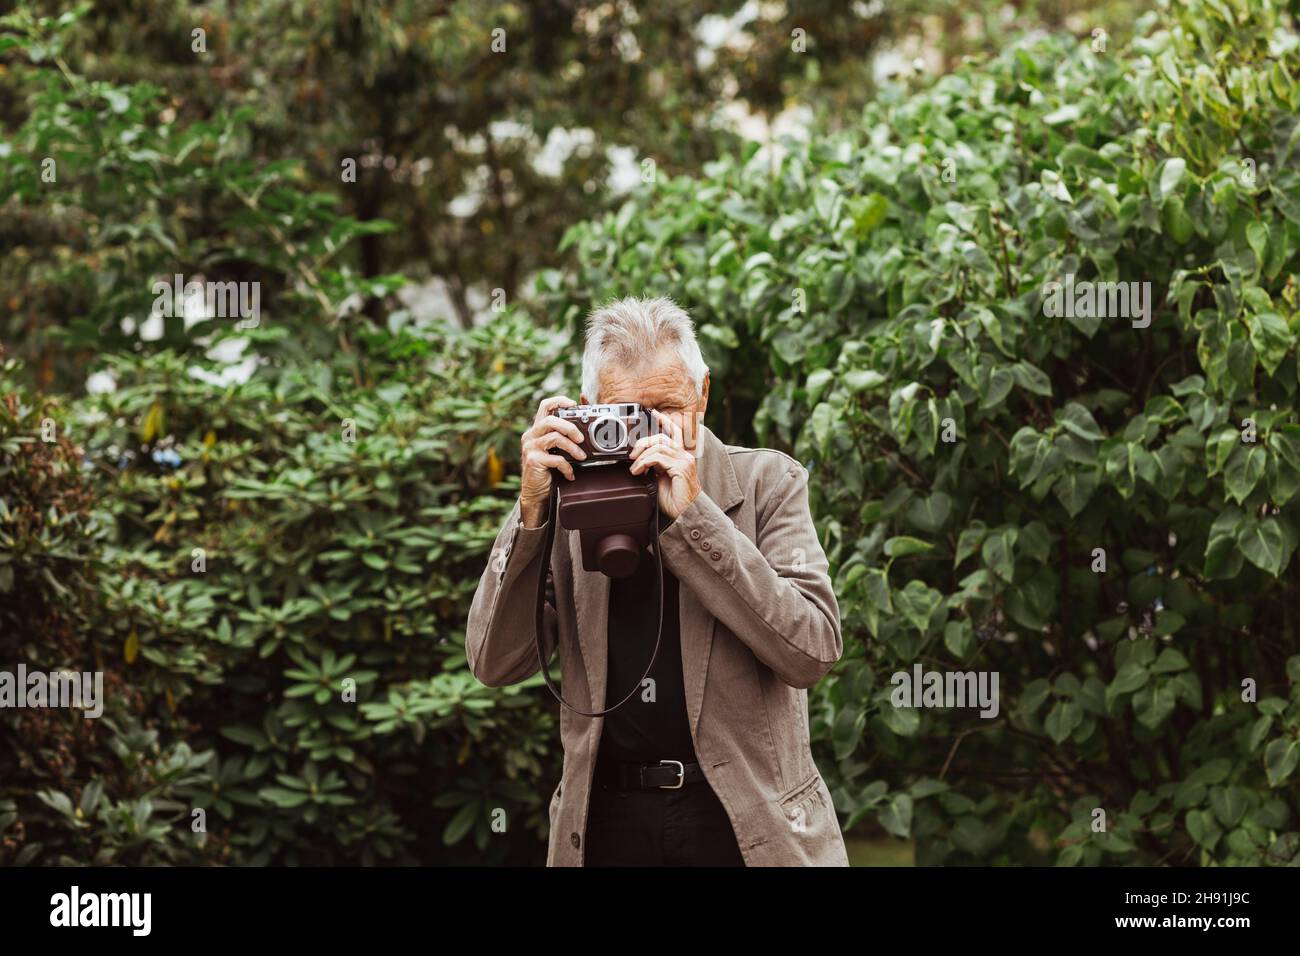 Hombre anciano fotografiando a través de la cámara contra las plantas en el parque Foto de stock